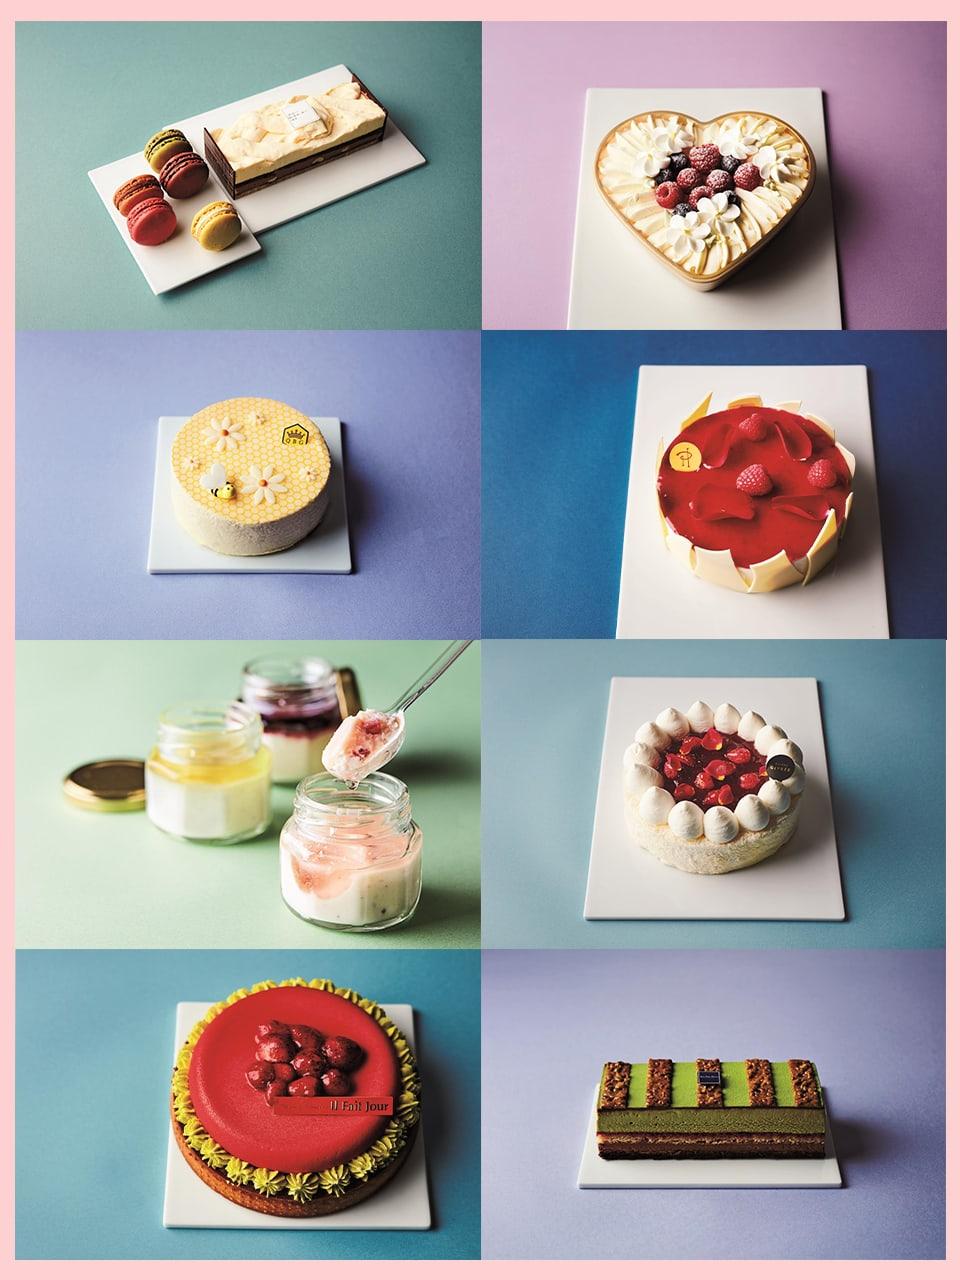 「伊勢丹新宿店」が期間限定で冷凍ケーキを販売。生菓子のような圧巻のクオリティ